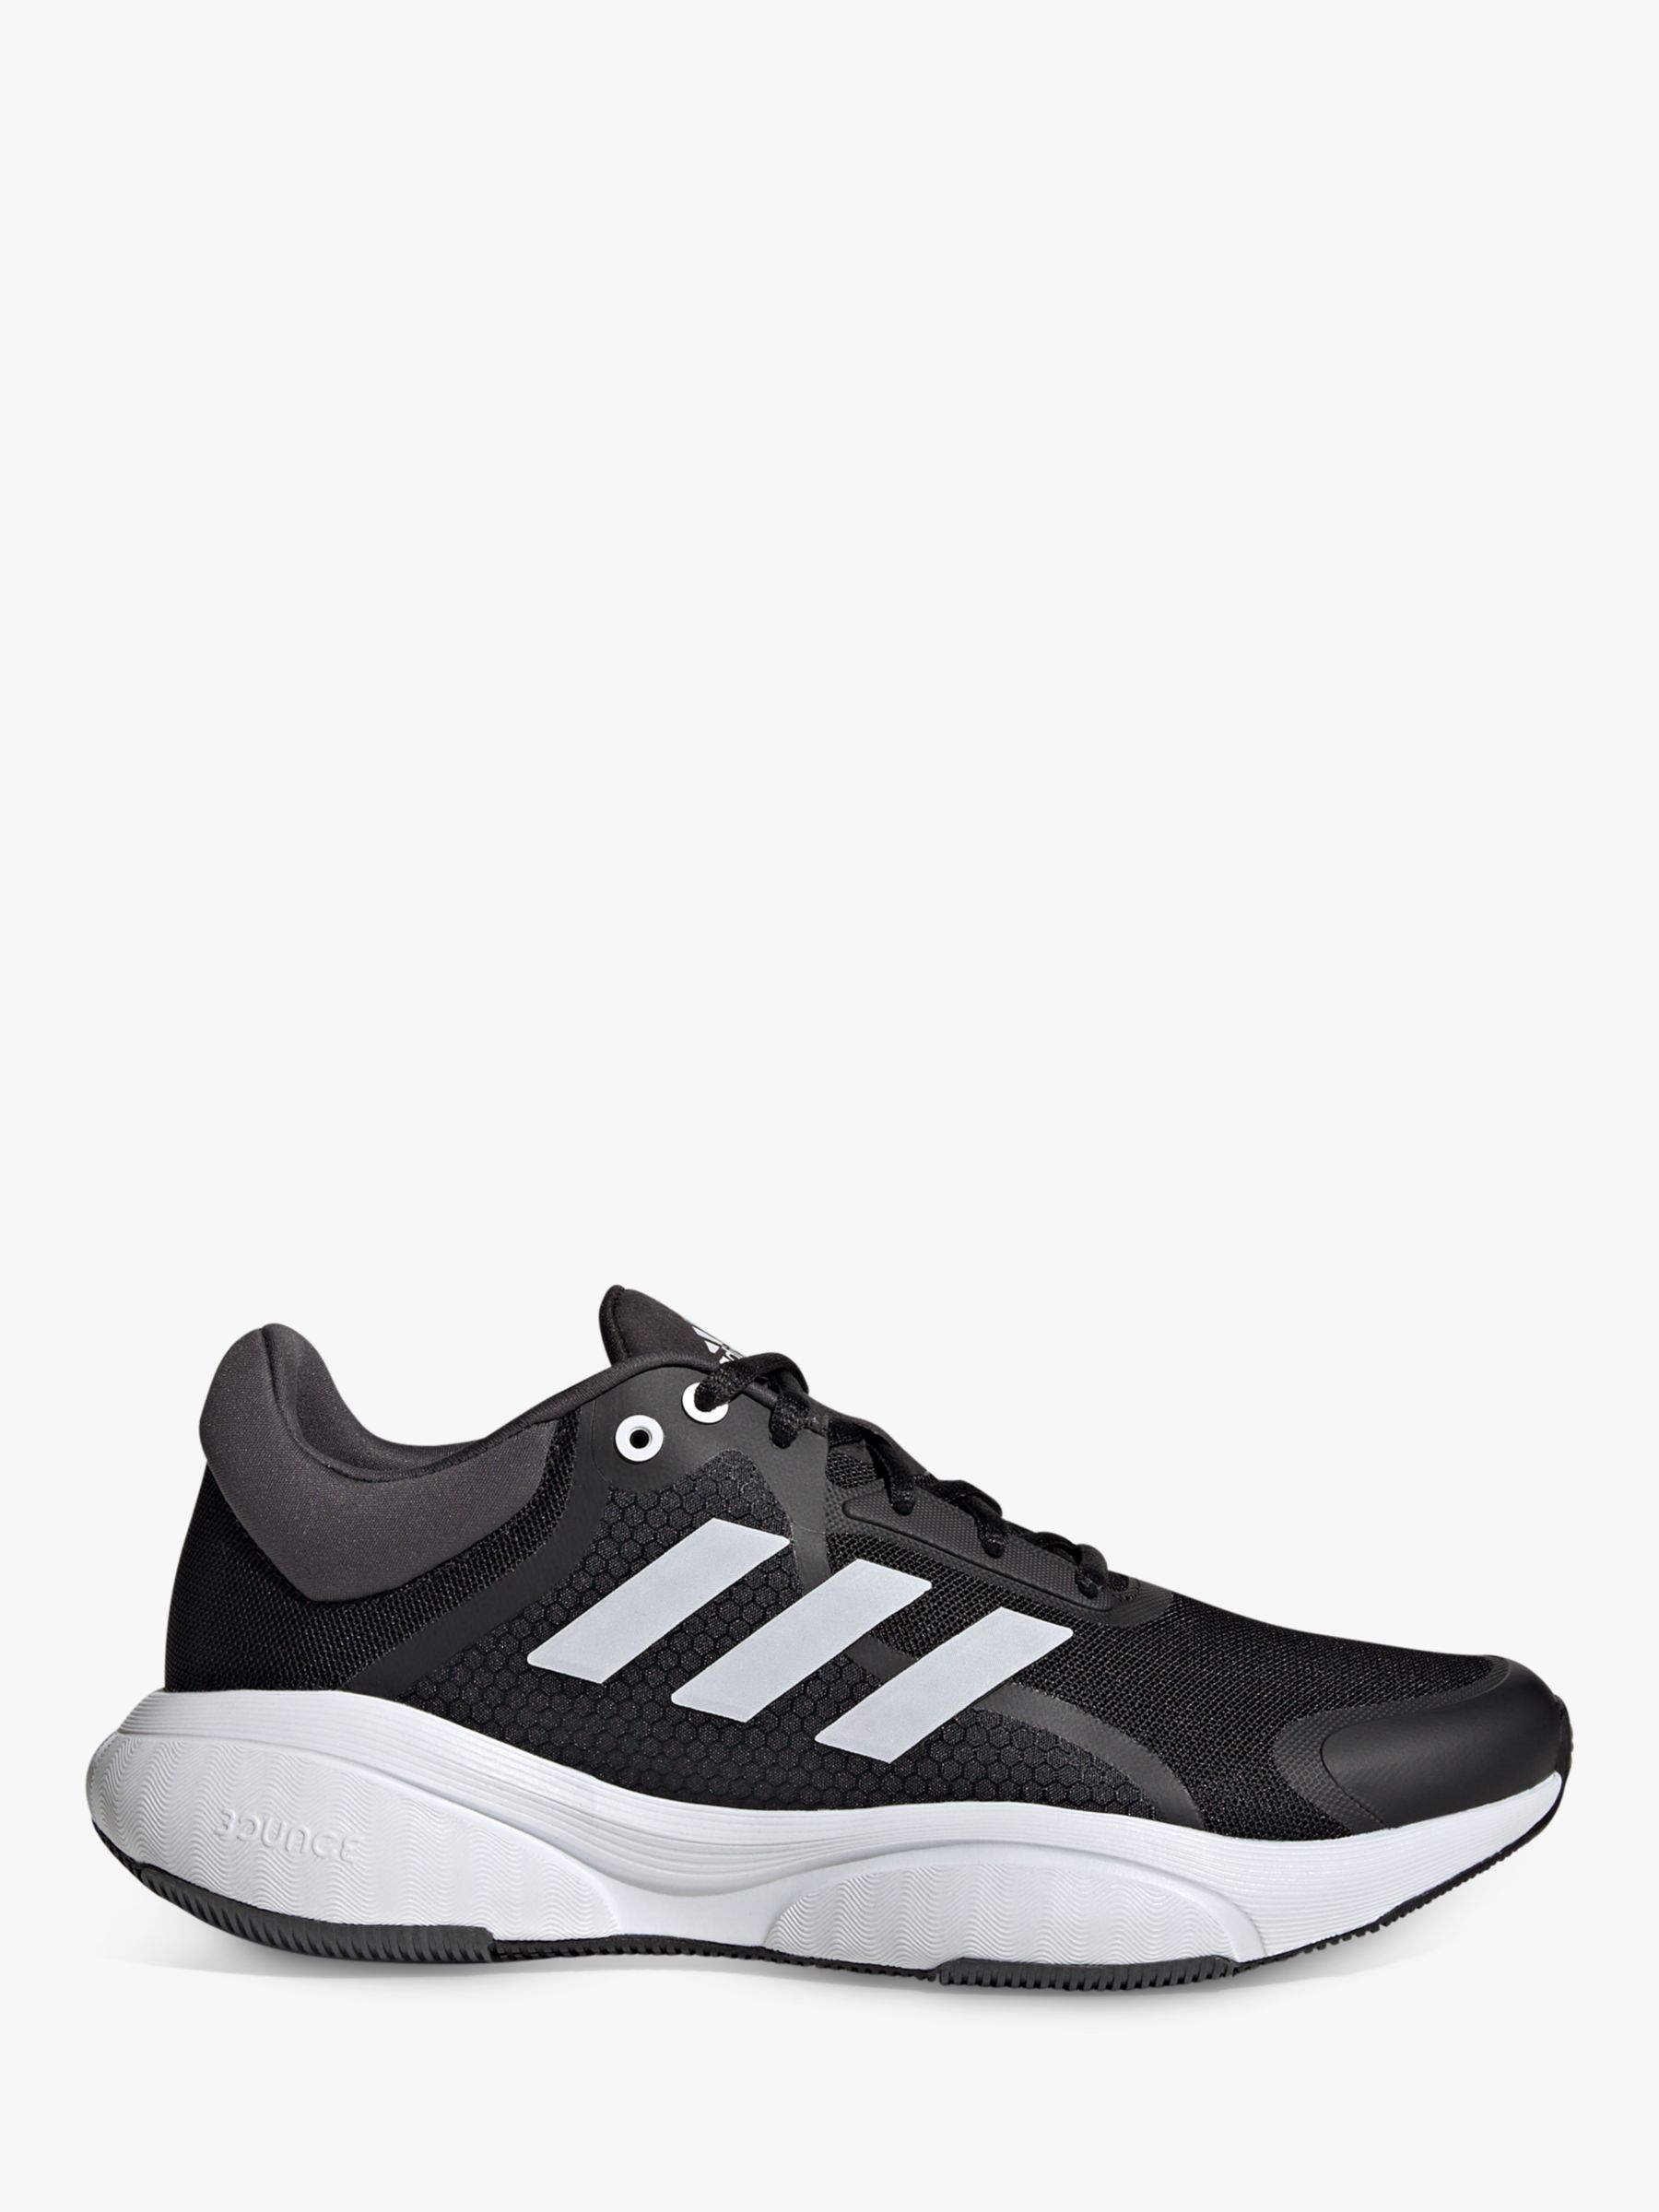 adidas Women's Running Shoes, Core White/Grey Six John & Partners